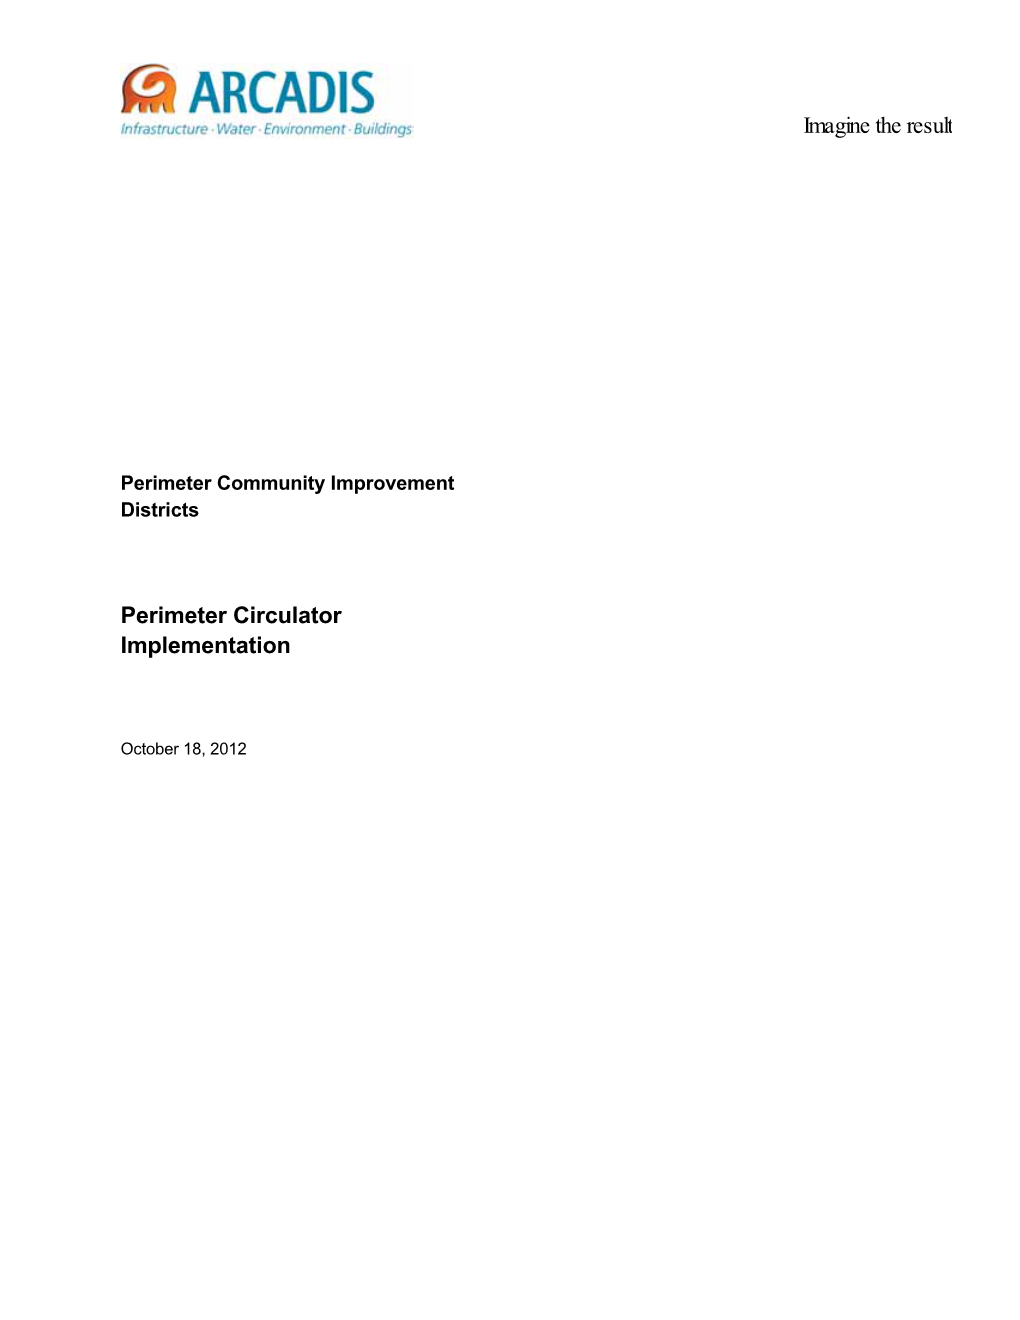 Perimeter Circulator Implementation Report